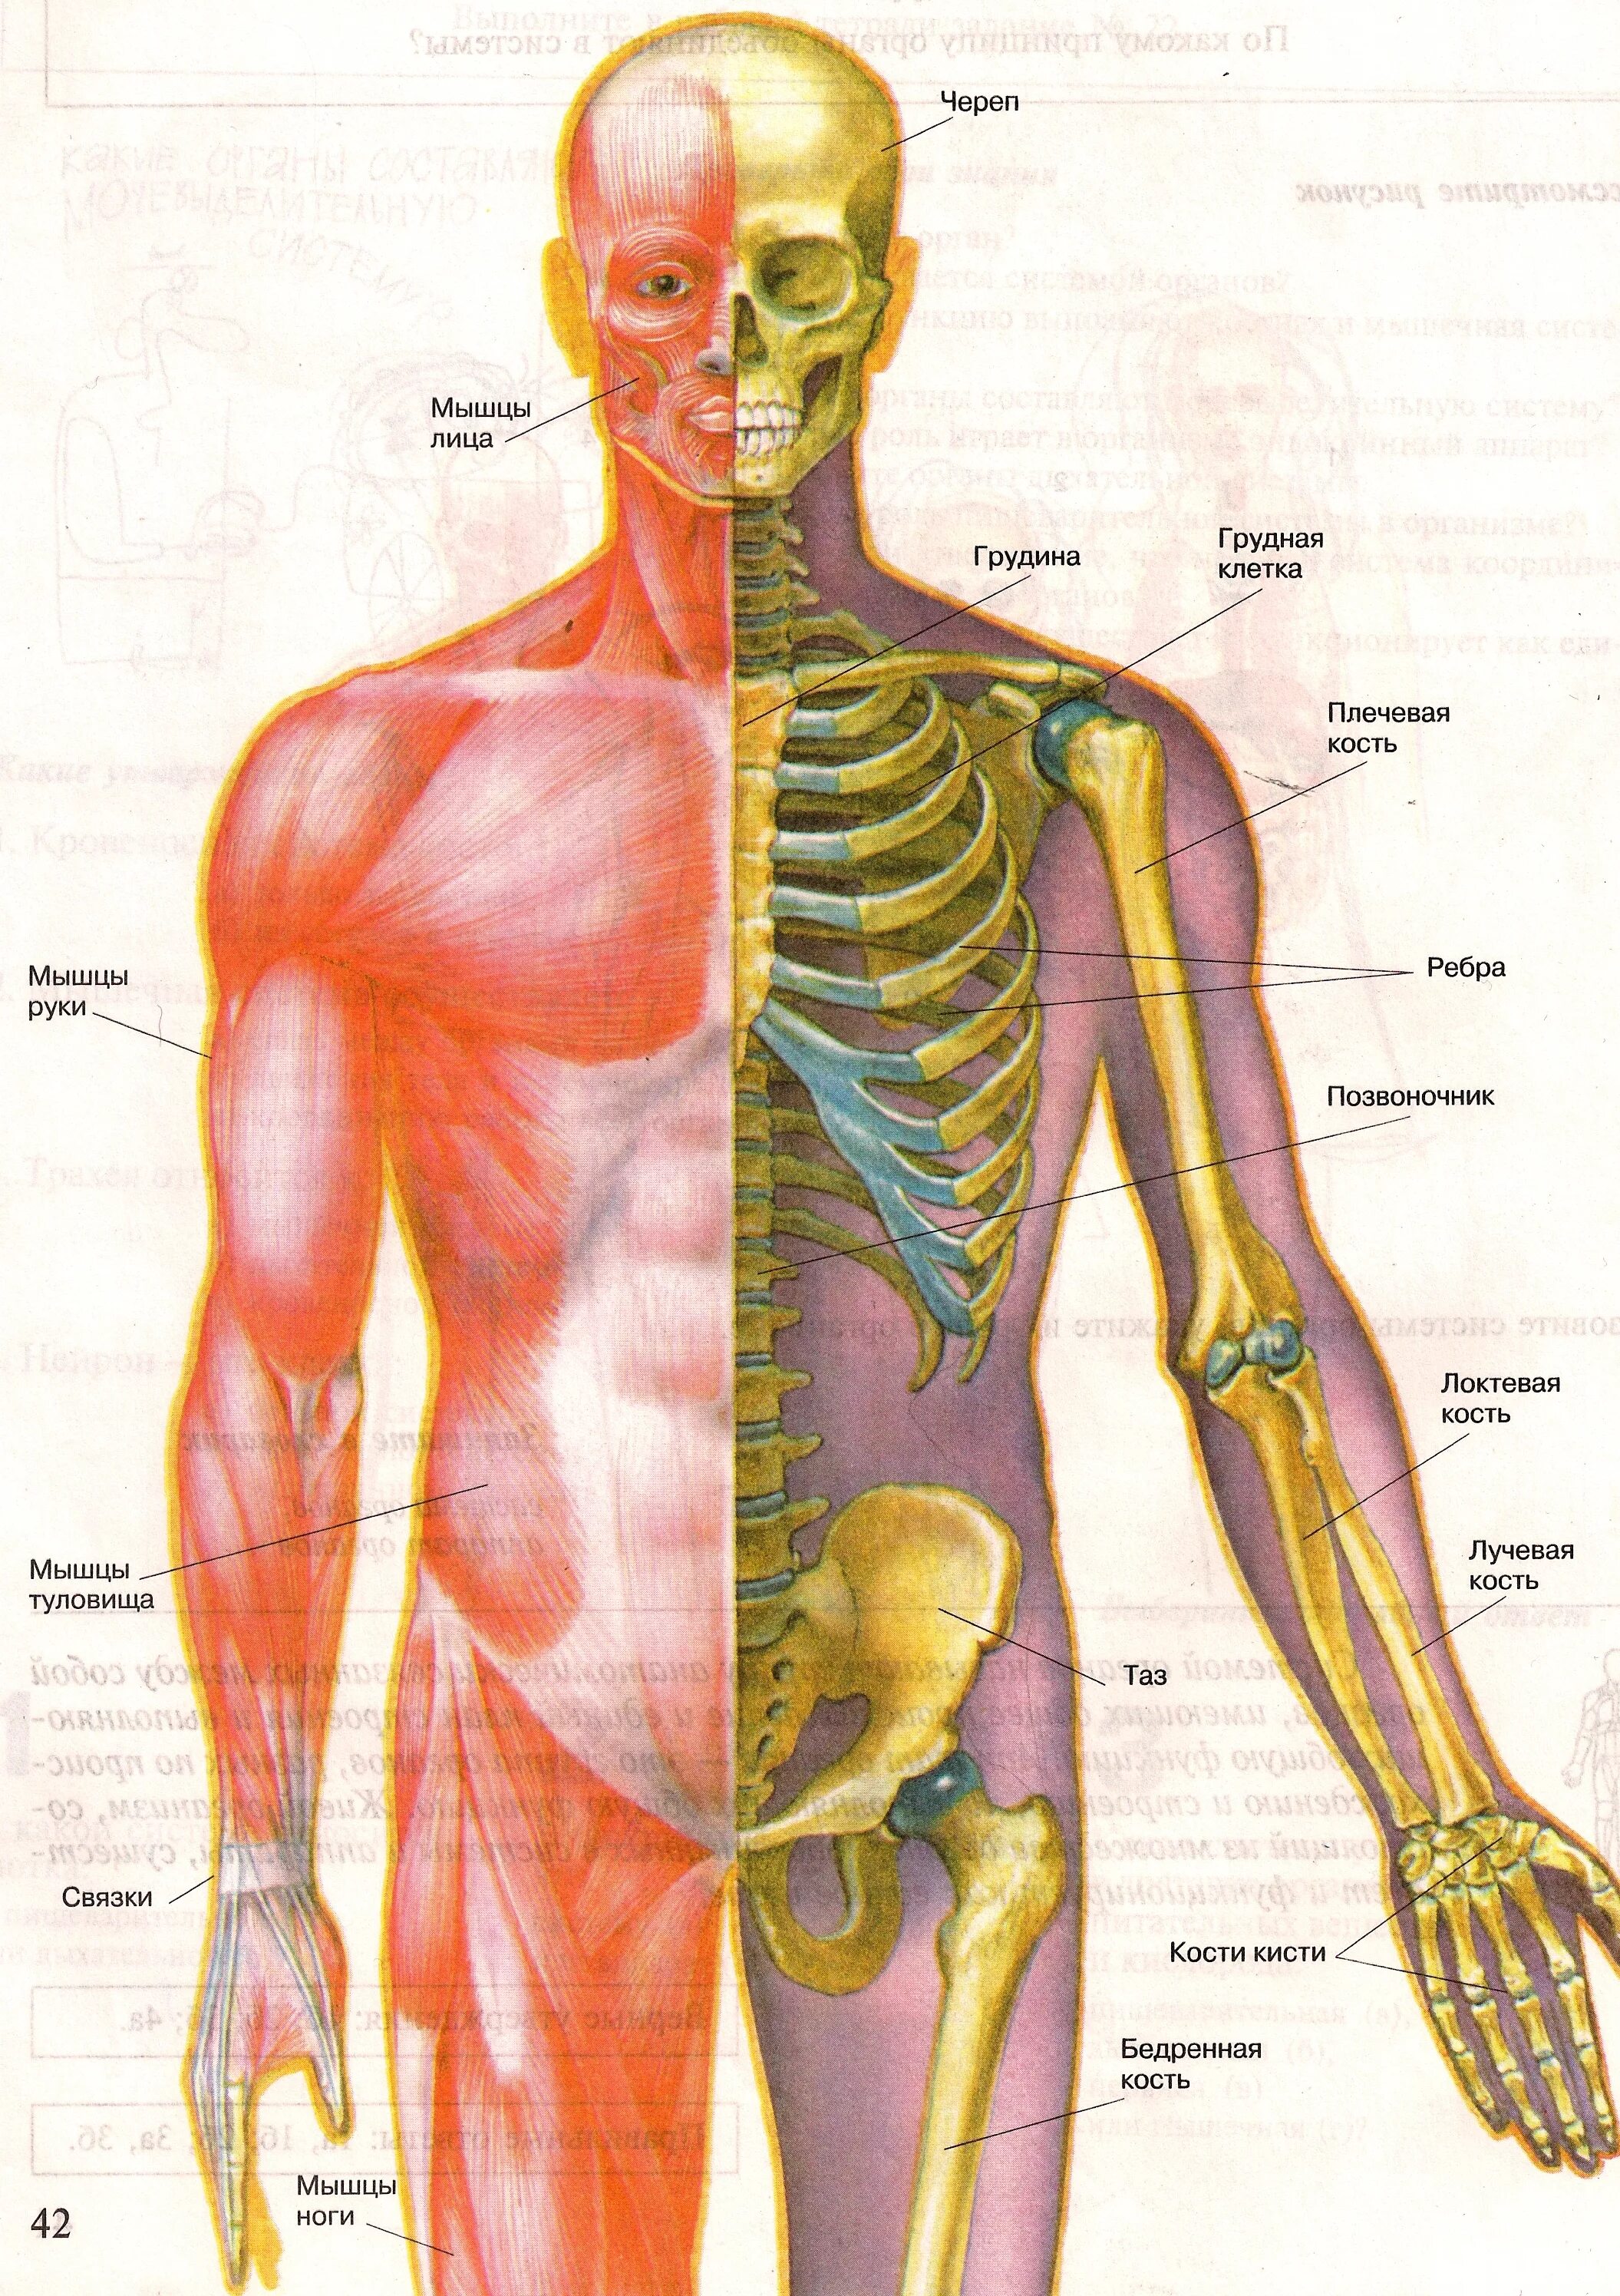 Мышцы и суставы. Строение скелета опорно двигательная система. Болезни костно-мышечной системы (опорно-двигательного аппарата). Опорно двигательная система мышцы человека анатомия. Строение опорно-двигательной системы человека (мышечная система)..